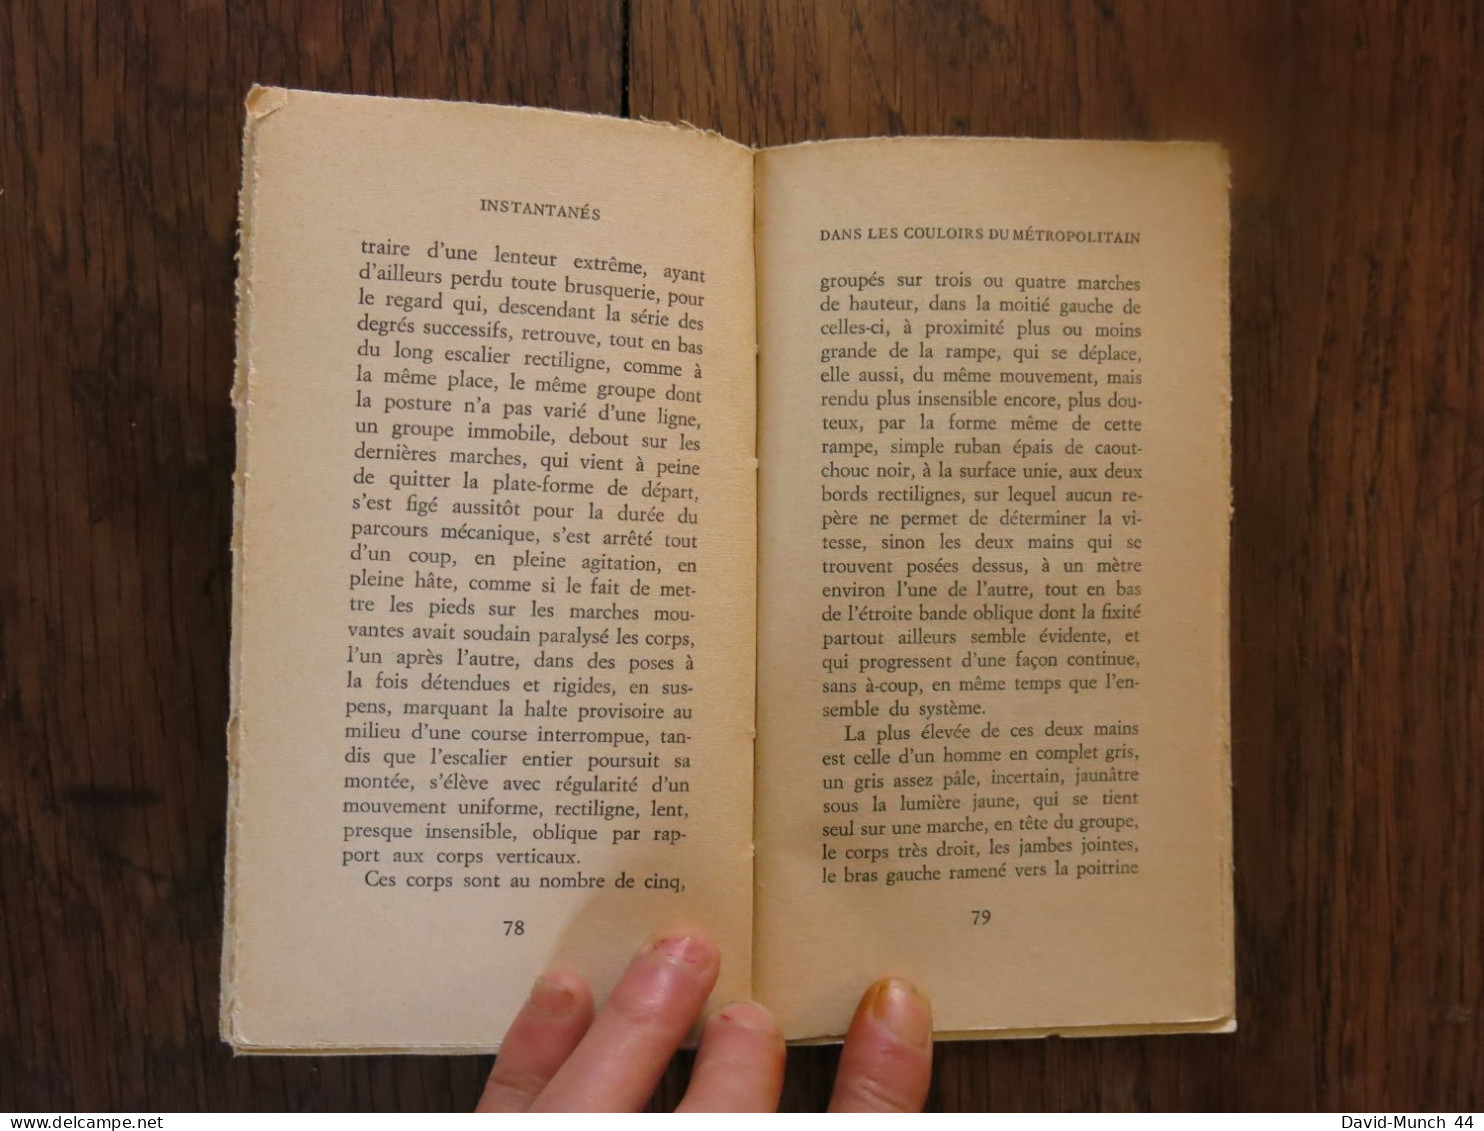 Instantanés de Alain Robbe-Grillet. Les éditions de Minuit. 1962